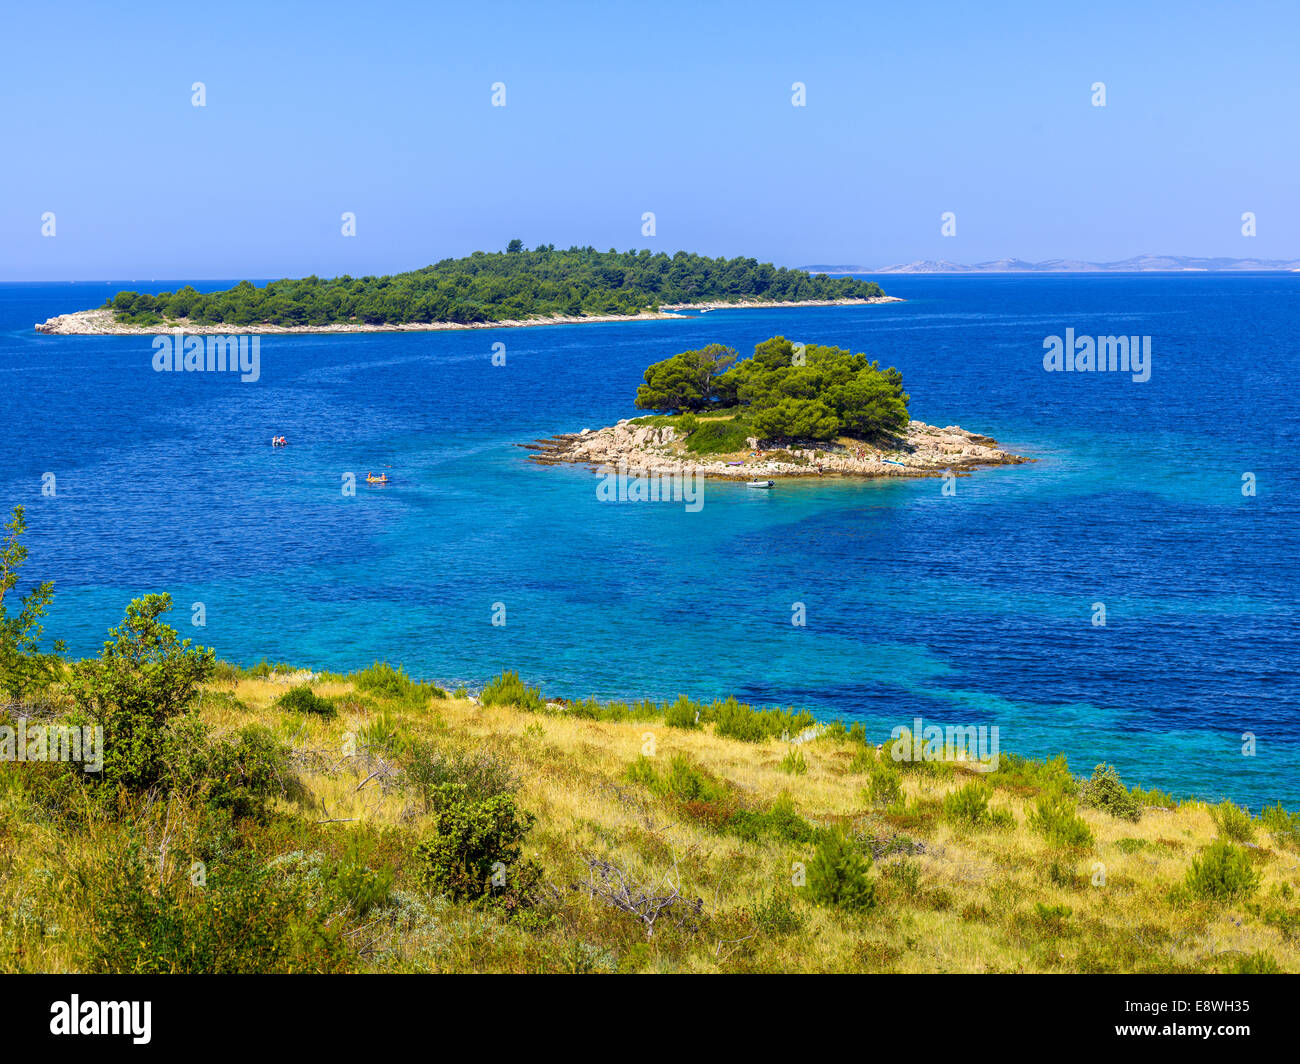 Kroatien Küste, Strand, blaues Meer Urlaub glücklich Sonne Sommerurlaub Gefühl Stimmung Glück Boot Tauchen küstennahe felsigen Steinen helle Kro Stockfoto